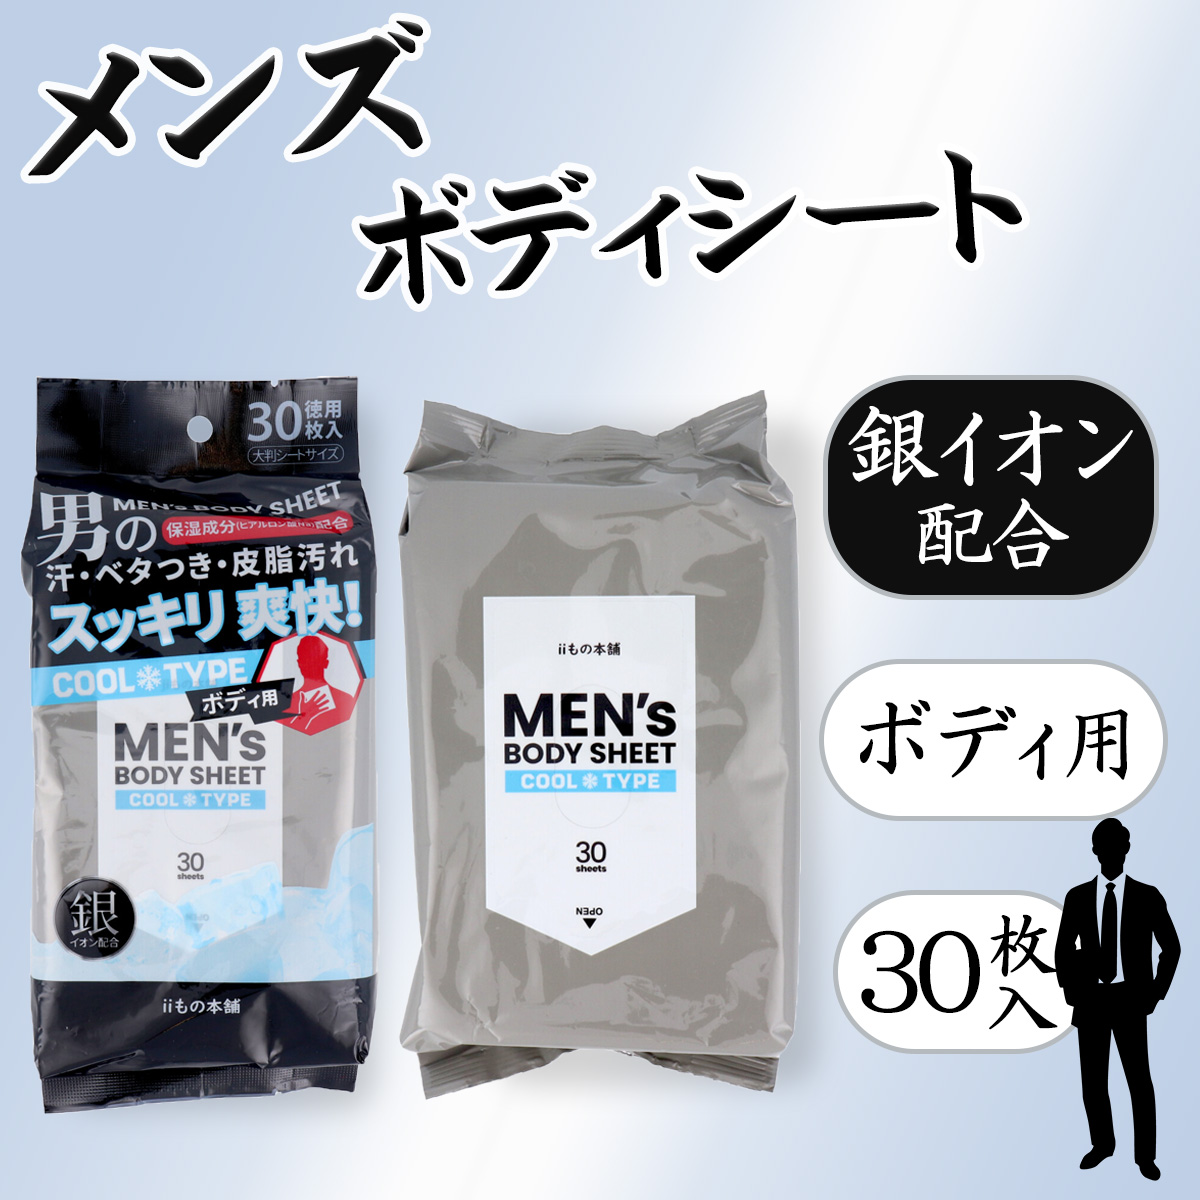 69%OFF!】 東京2020公式商品 ボディシート 2袋セット